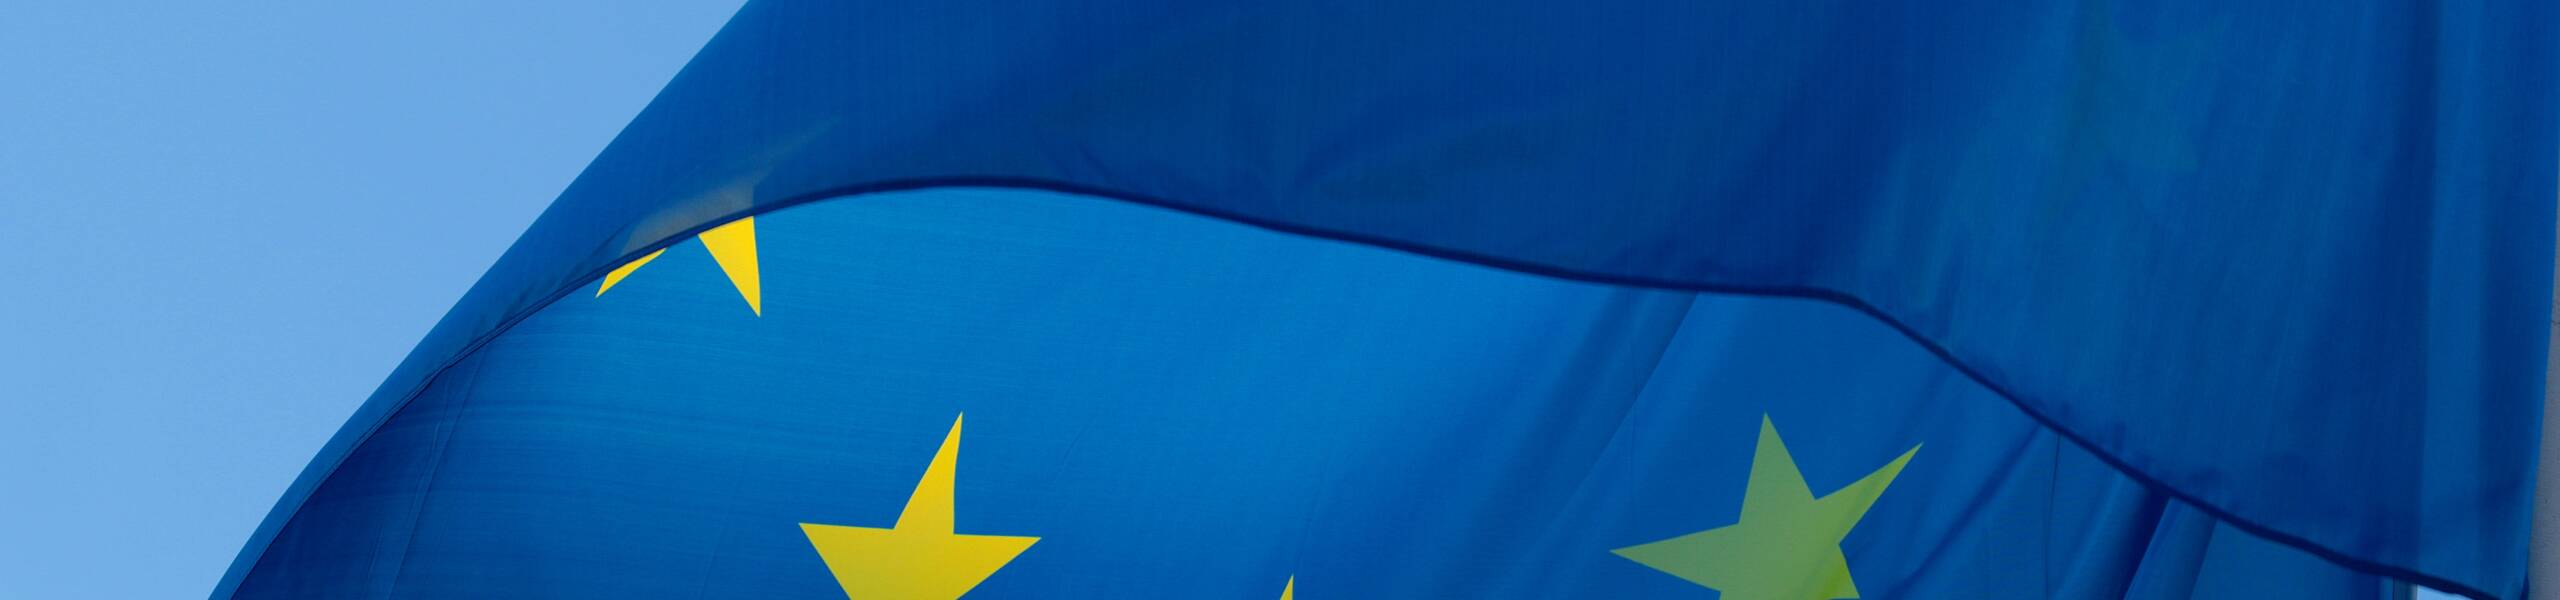 Kế hoạch giao dịch cặp ngoại tệ EURUSD ngày 05/11/2018